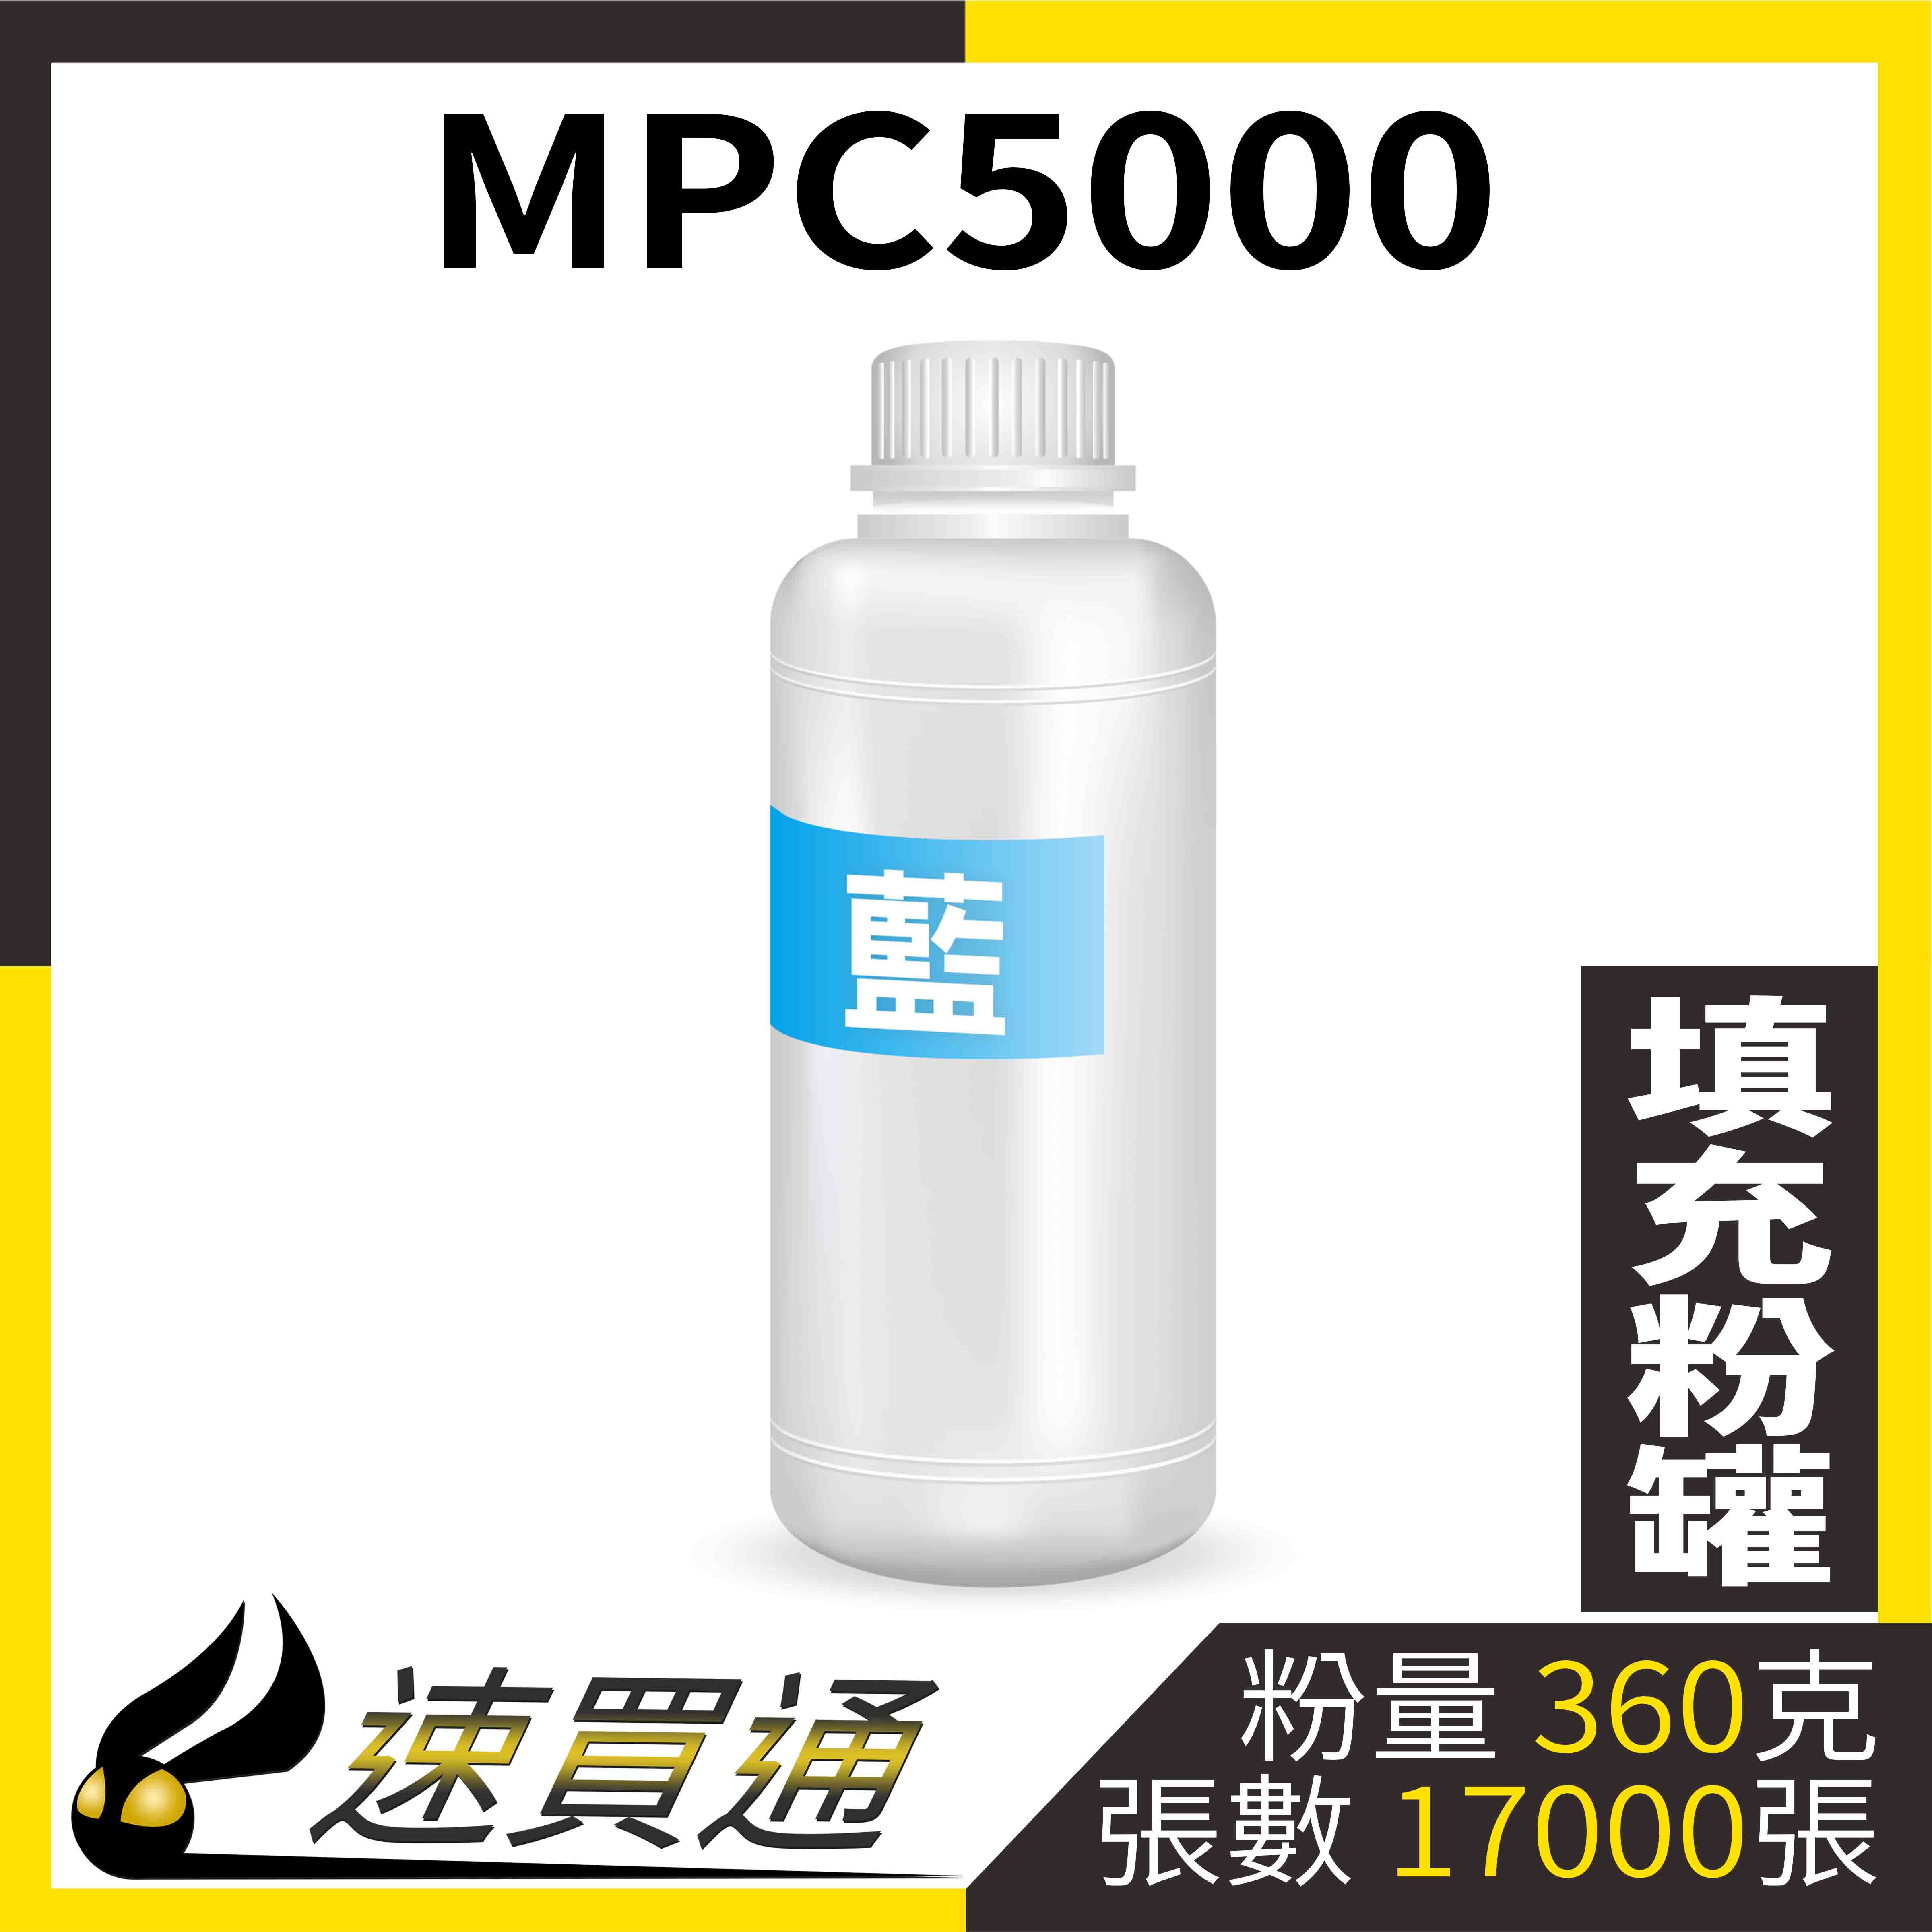 【速買通】RICOH MPC5000 藍 填充式碳粉罐